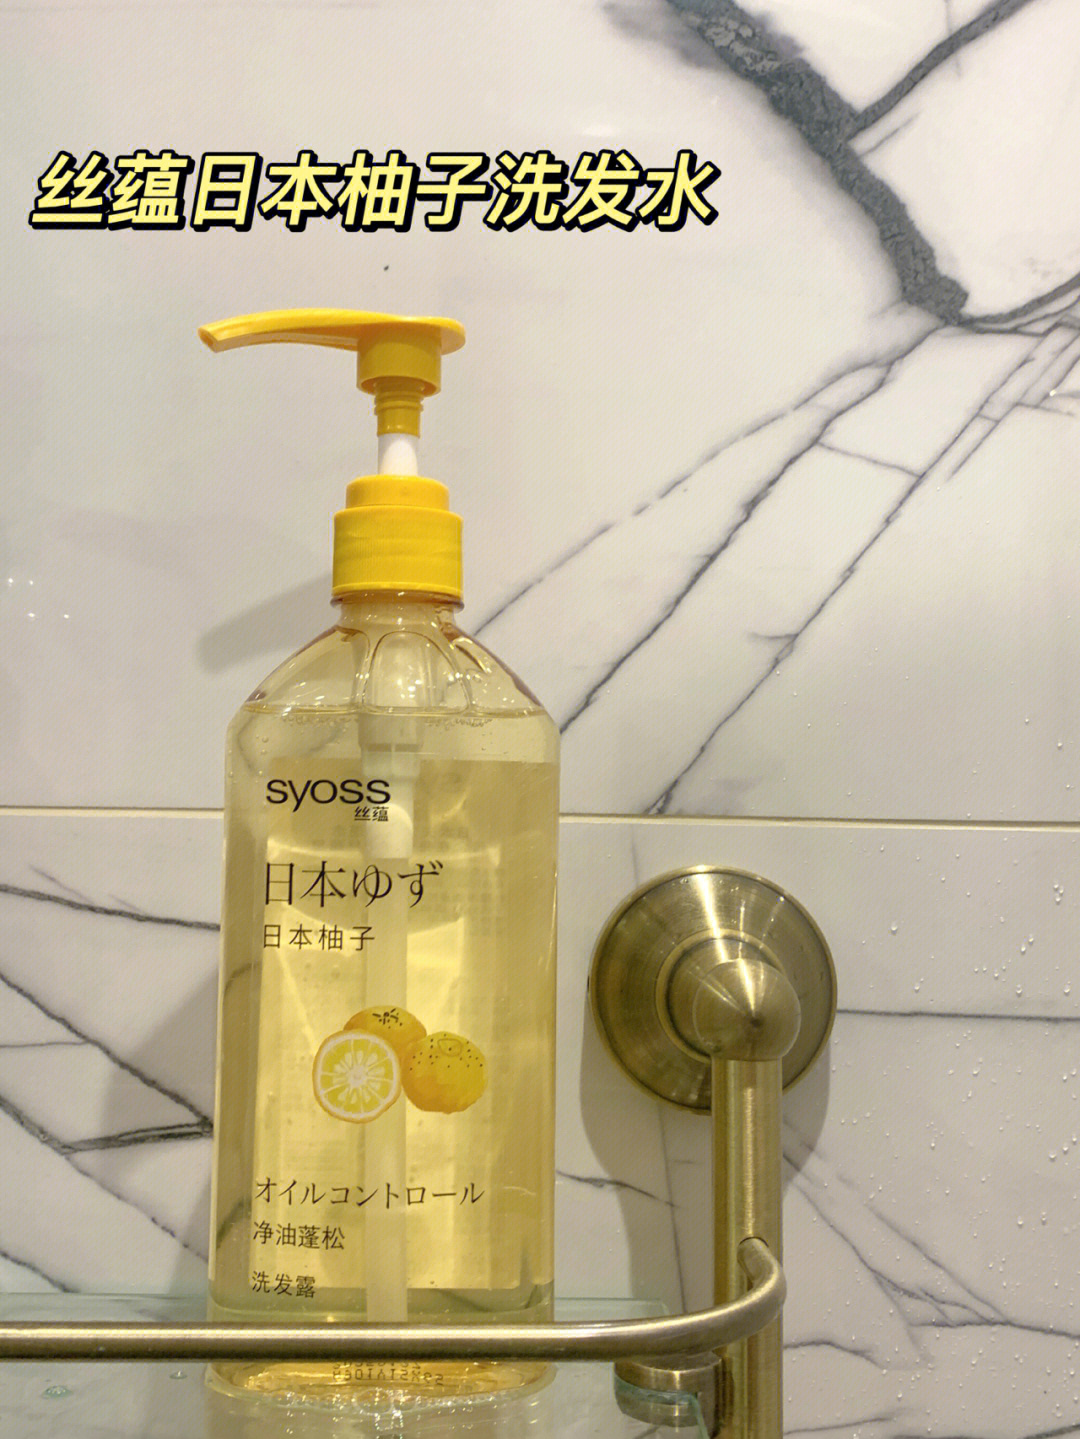 丝蕴日本柚子洗发水简直就是细软扁塌发质的救星9898透明质地很好